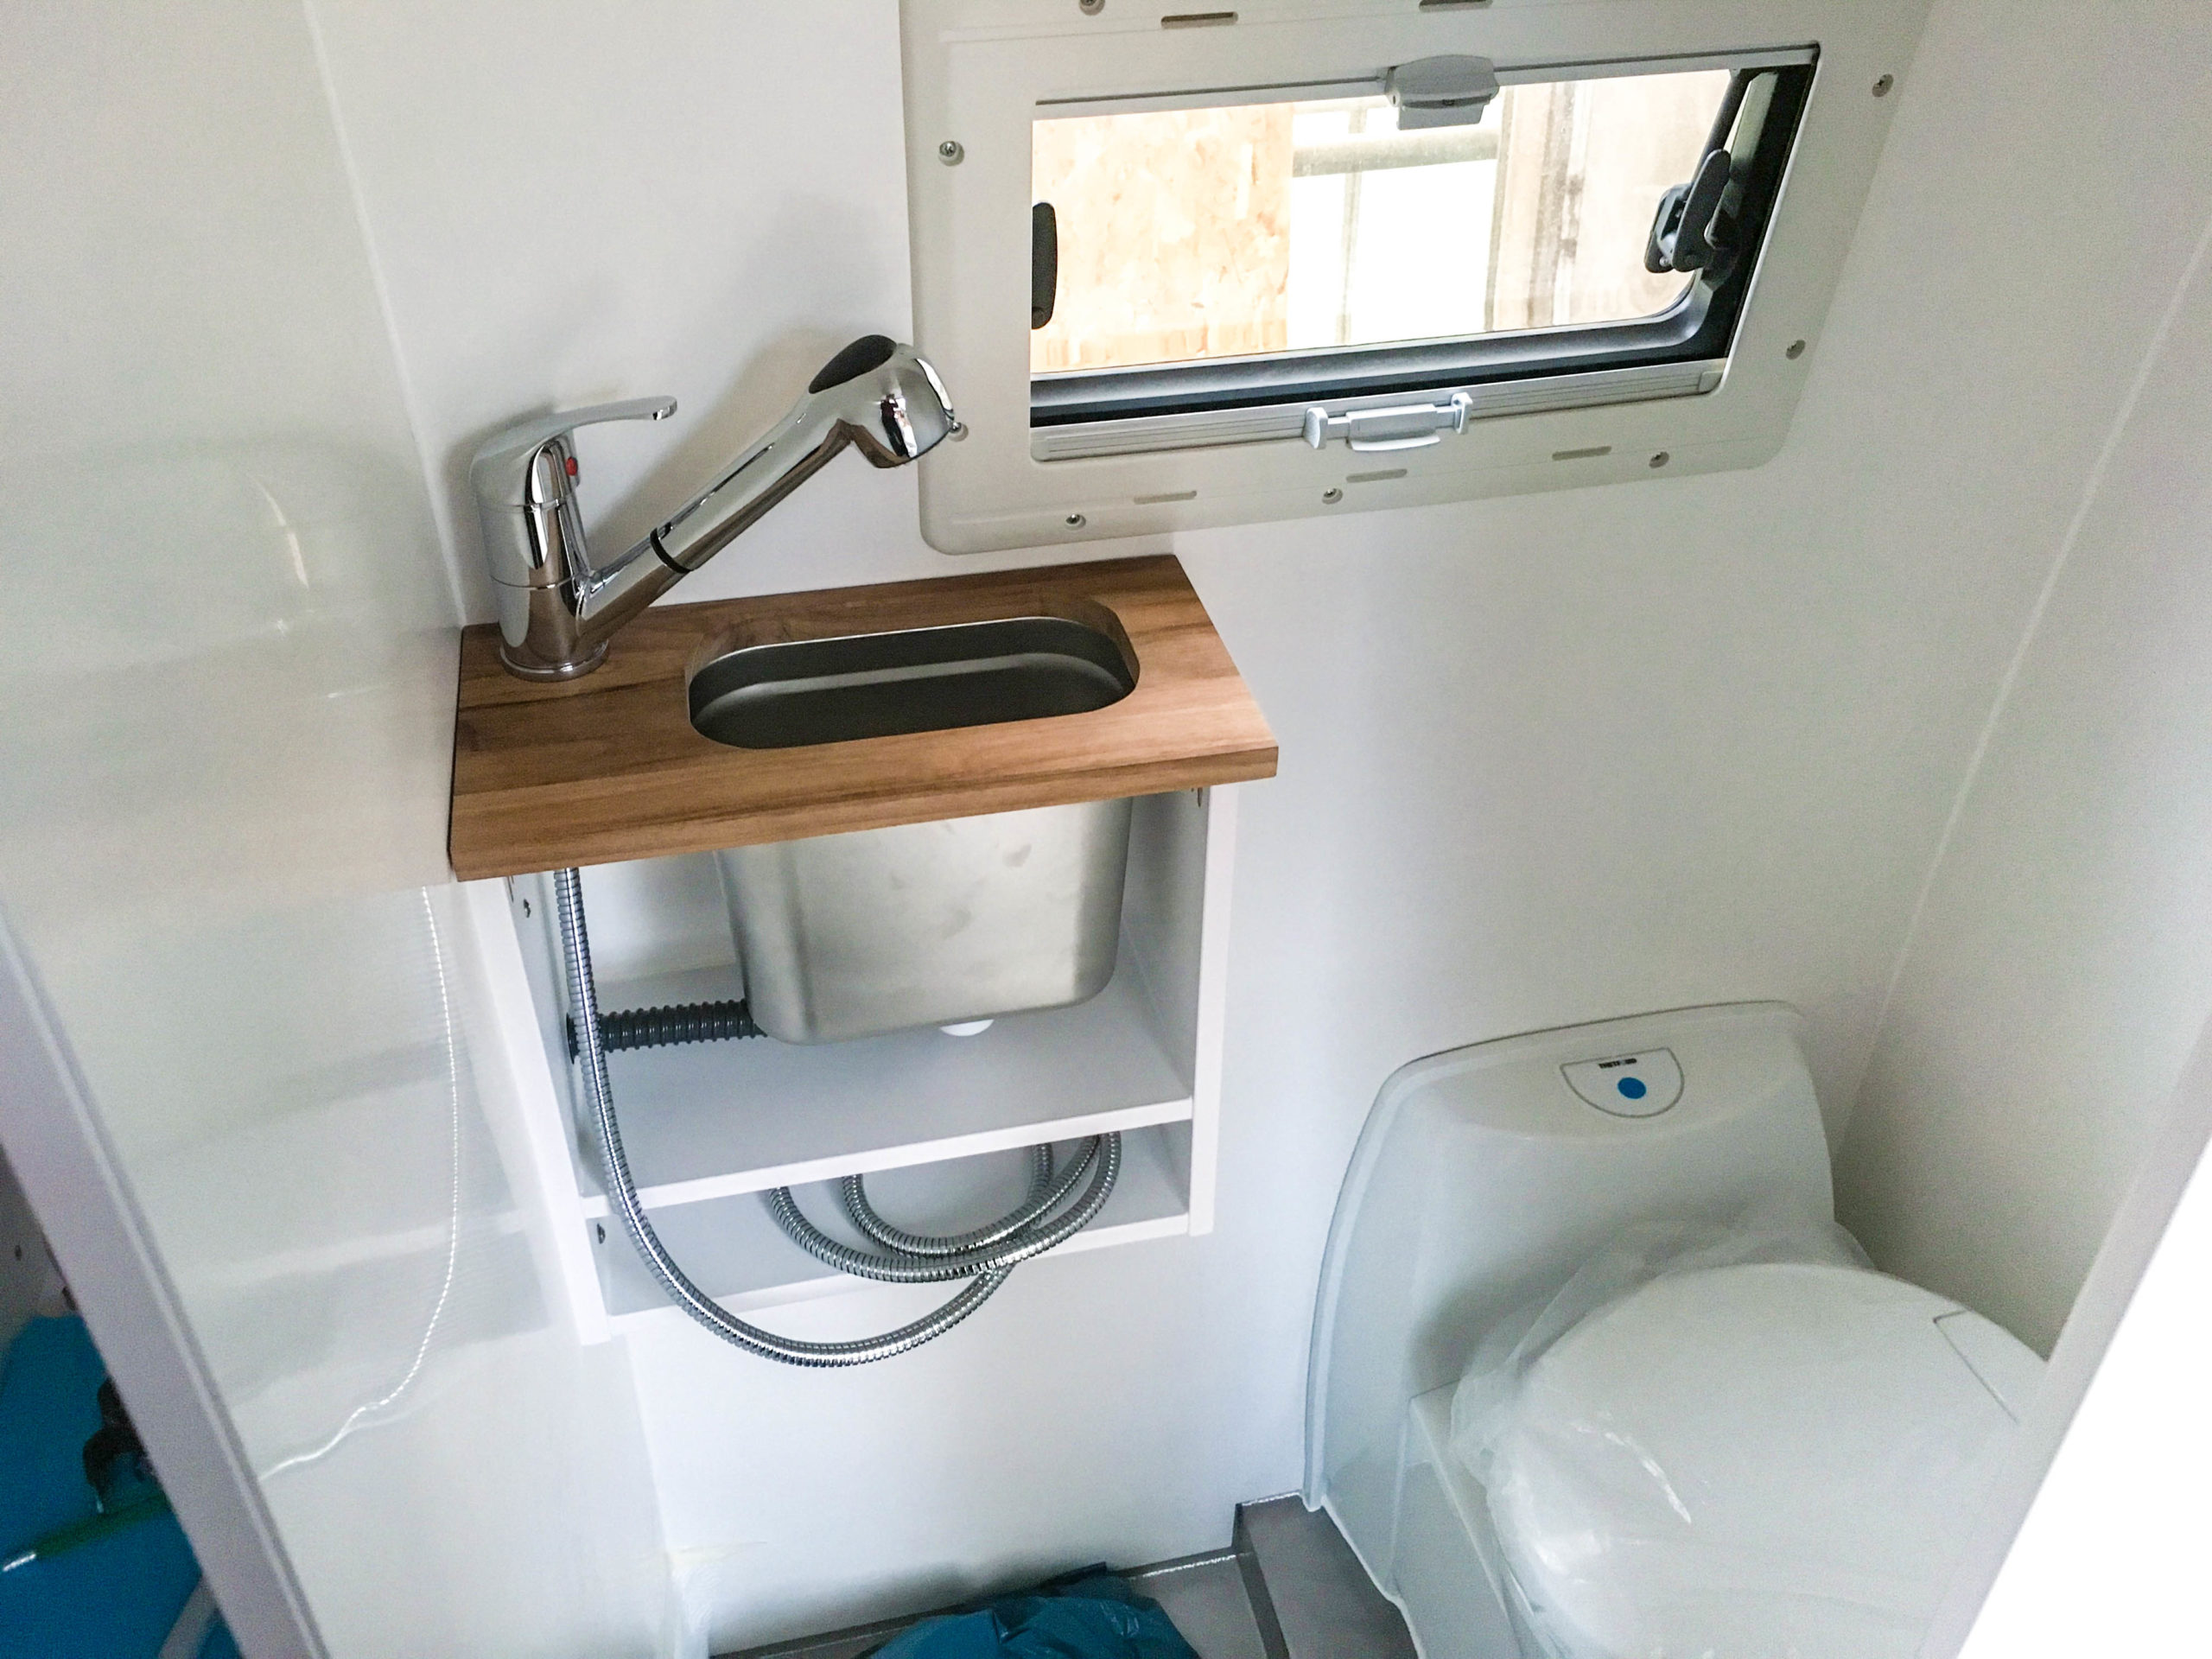 Nasszelle mit Dusche und Toilette im Campervan – Overlandys